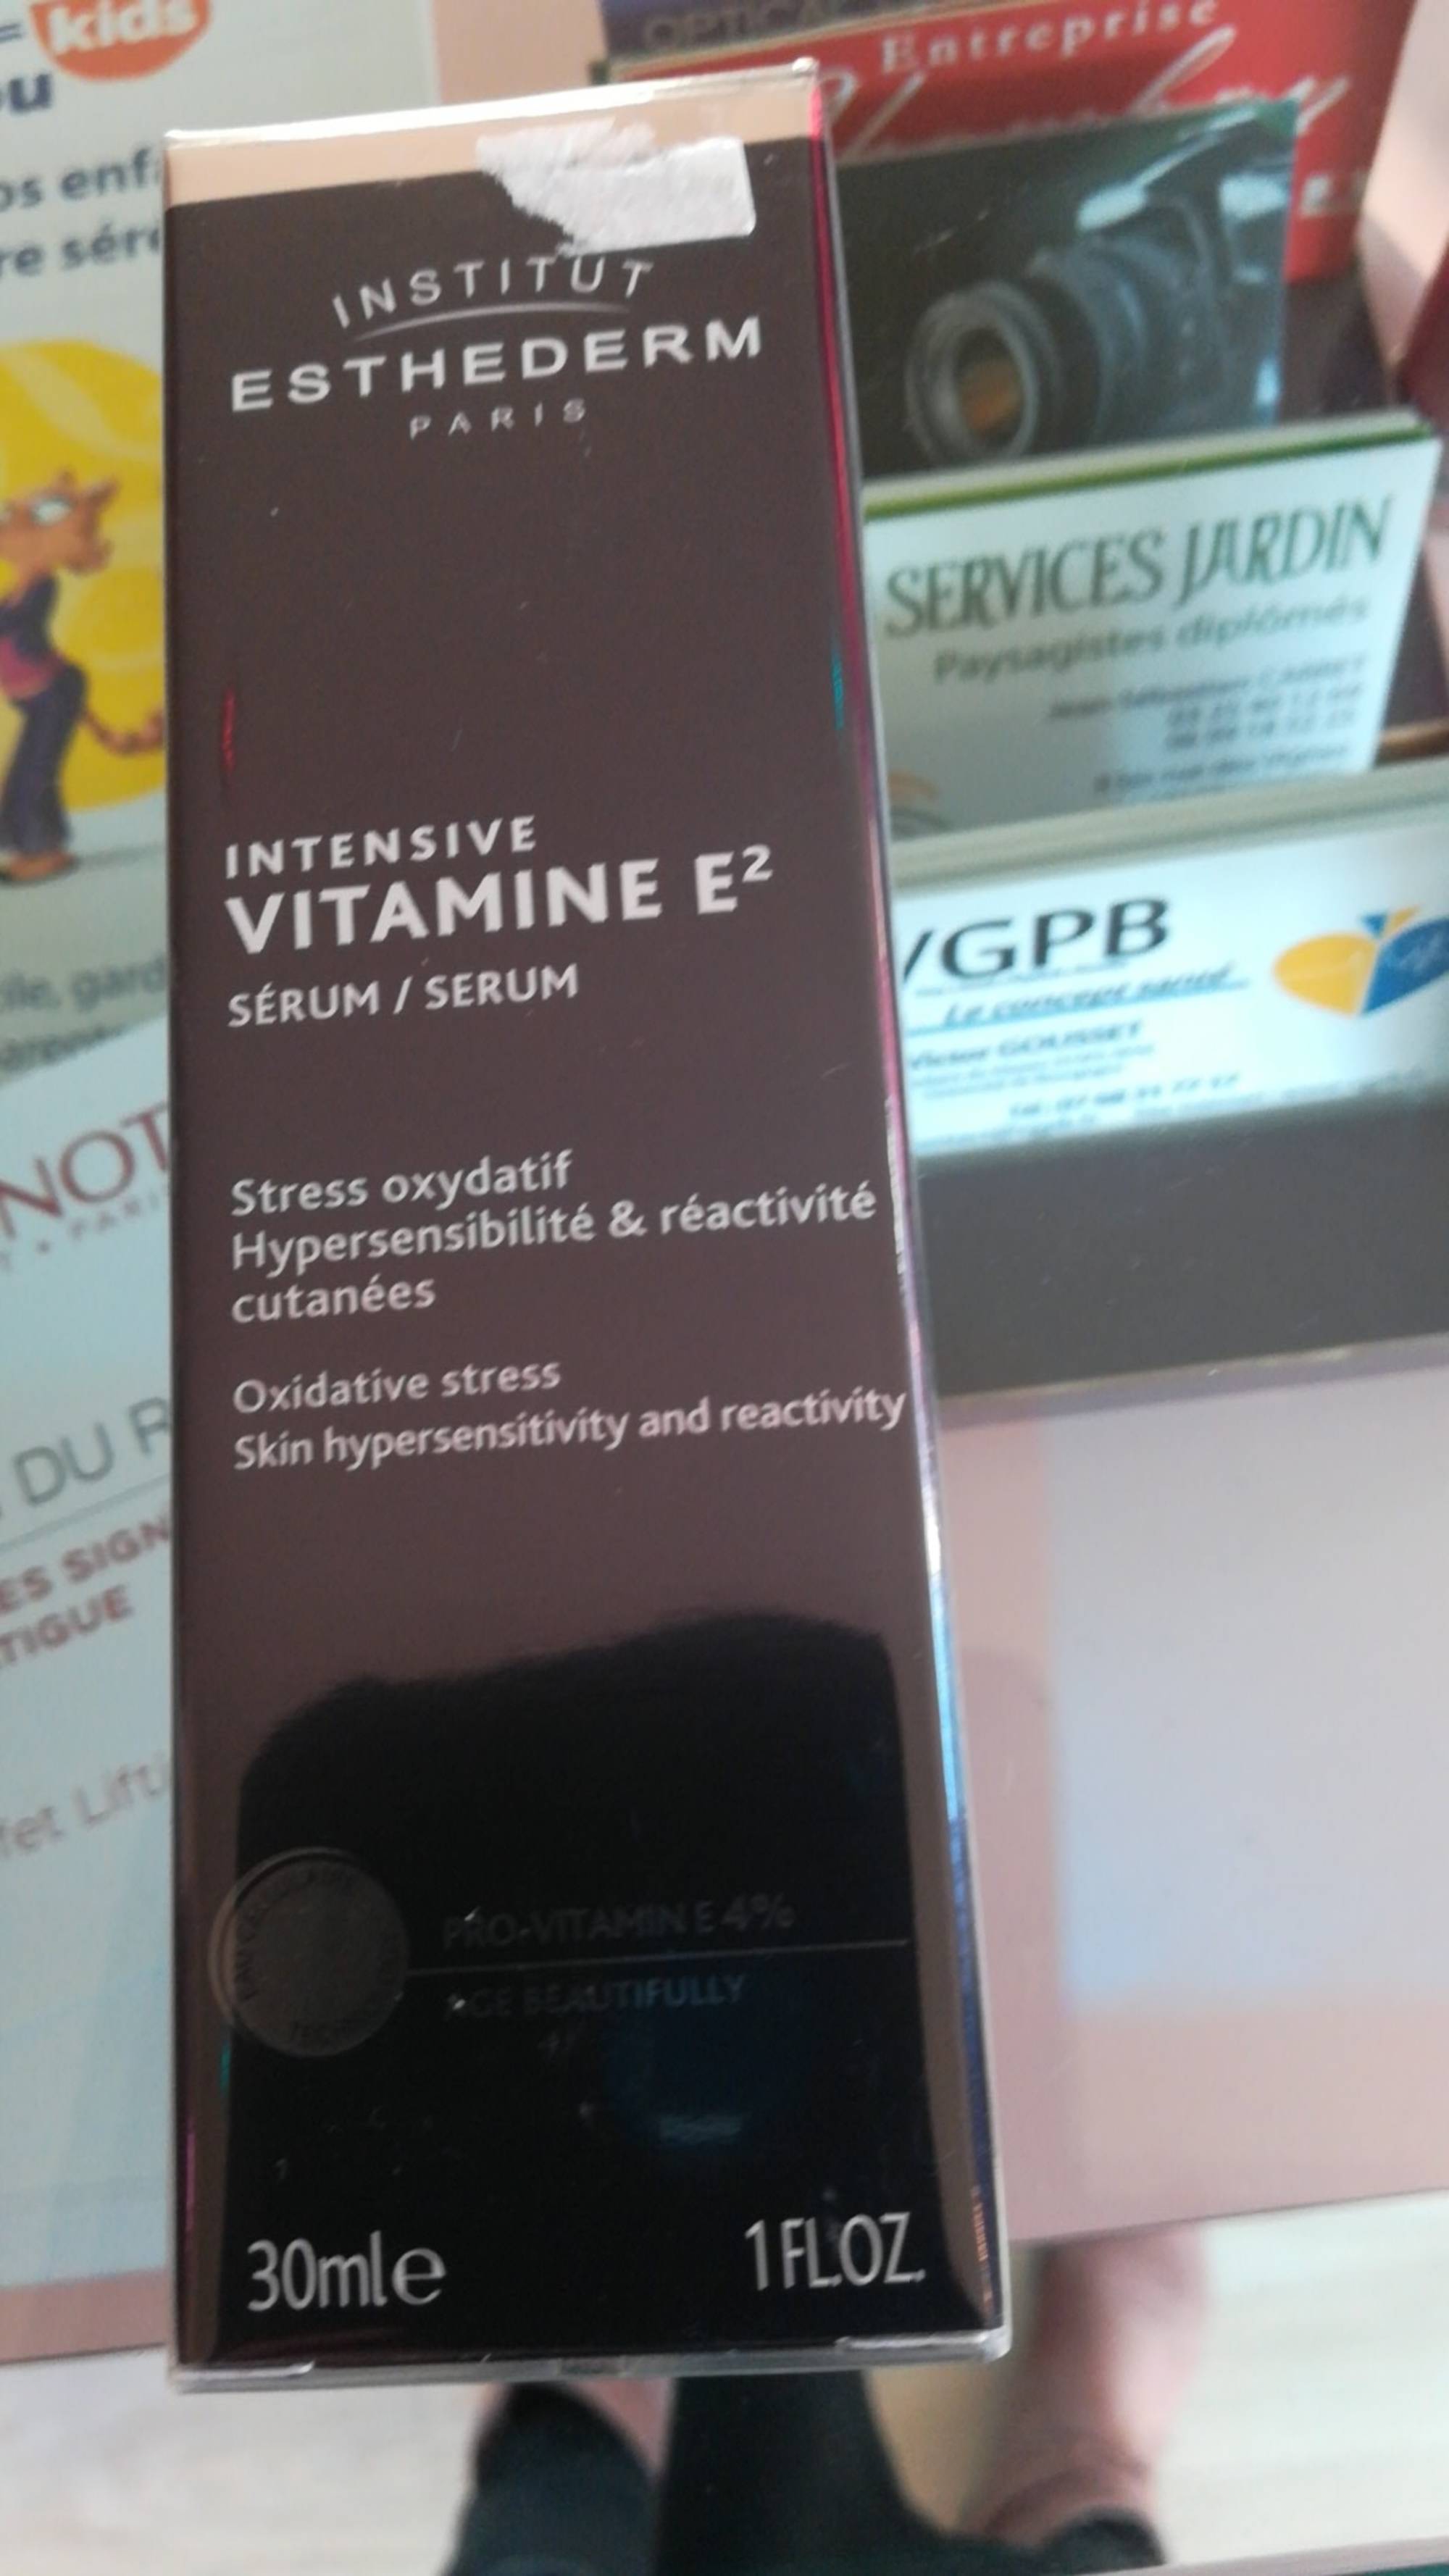 INSTITUT ESTHEDERM - Vitamine E2 - Intensive sérum